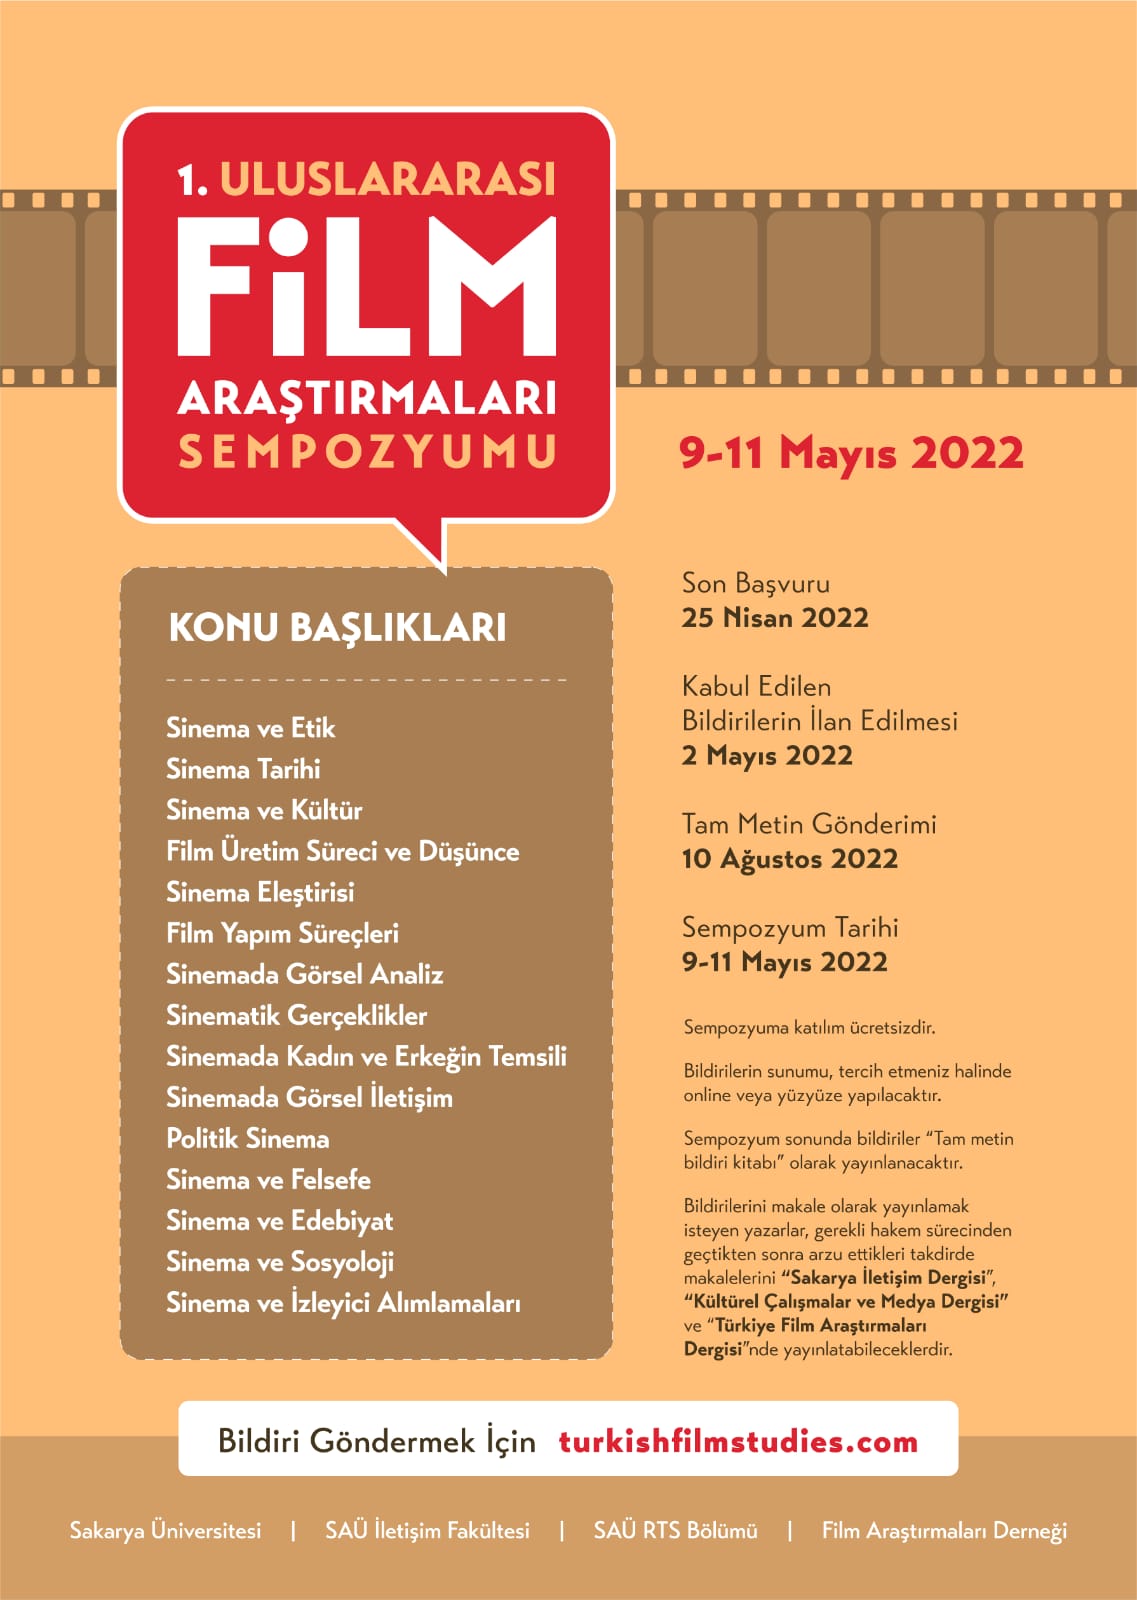 Uluslararası Film Araştırmaları Sempozyumuna Sayılı Günler Kaldı